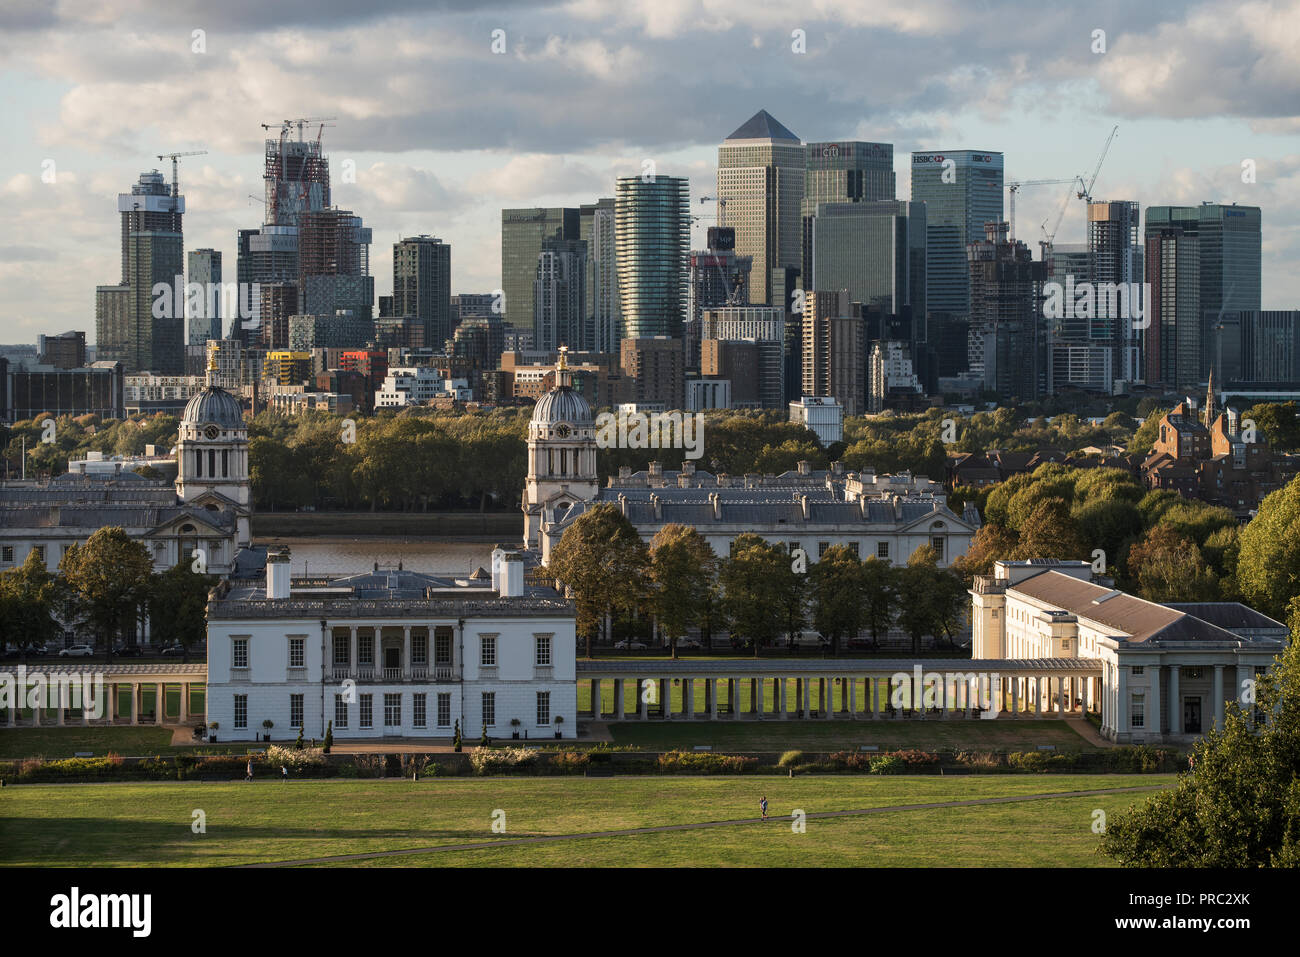 Londra Panorama dal parco di Greenwich, in Inghilterra, Regno Unito. 22 settembre 2018 XX e XXI cntury Canary Wharf città finanziaria complessa a L'Isle of Dogs in Towe Foto Stock